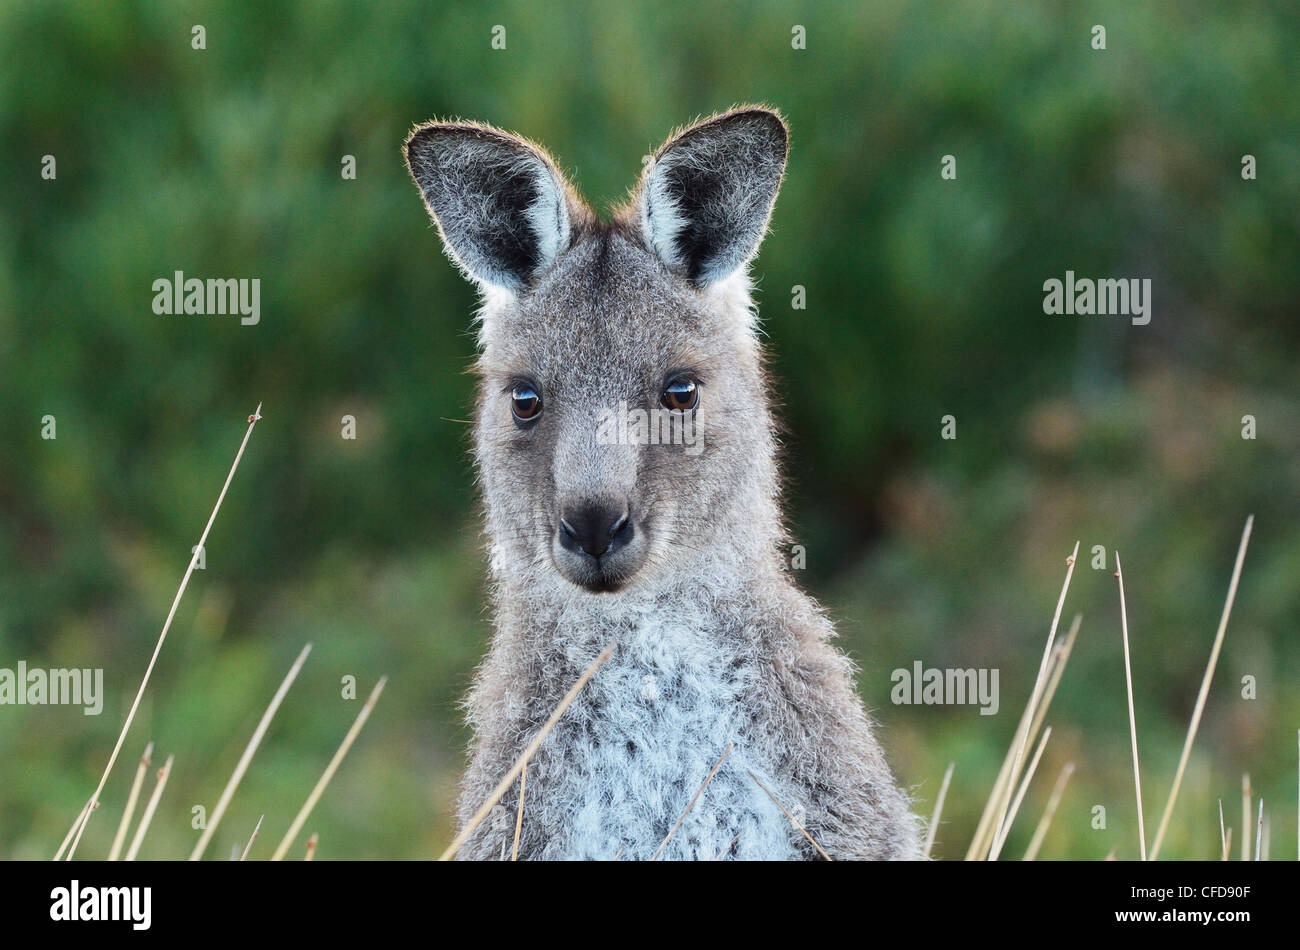 Kangourou gris de l'Est, Wilsons Promontory National Park, Victoria, Australie, Pacifique Banque D'Images